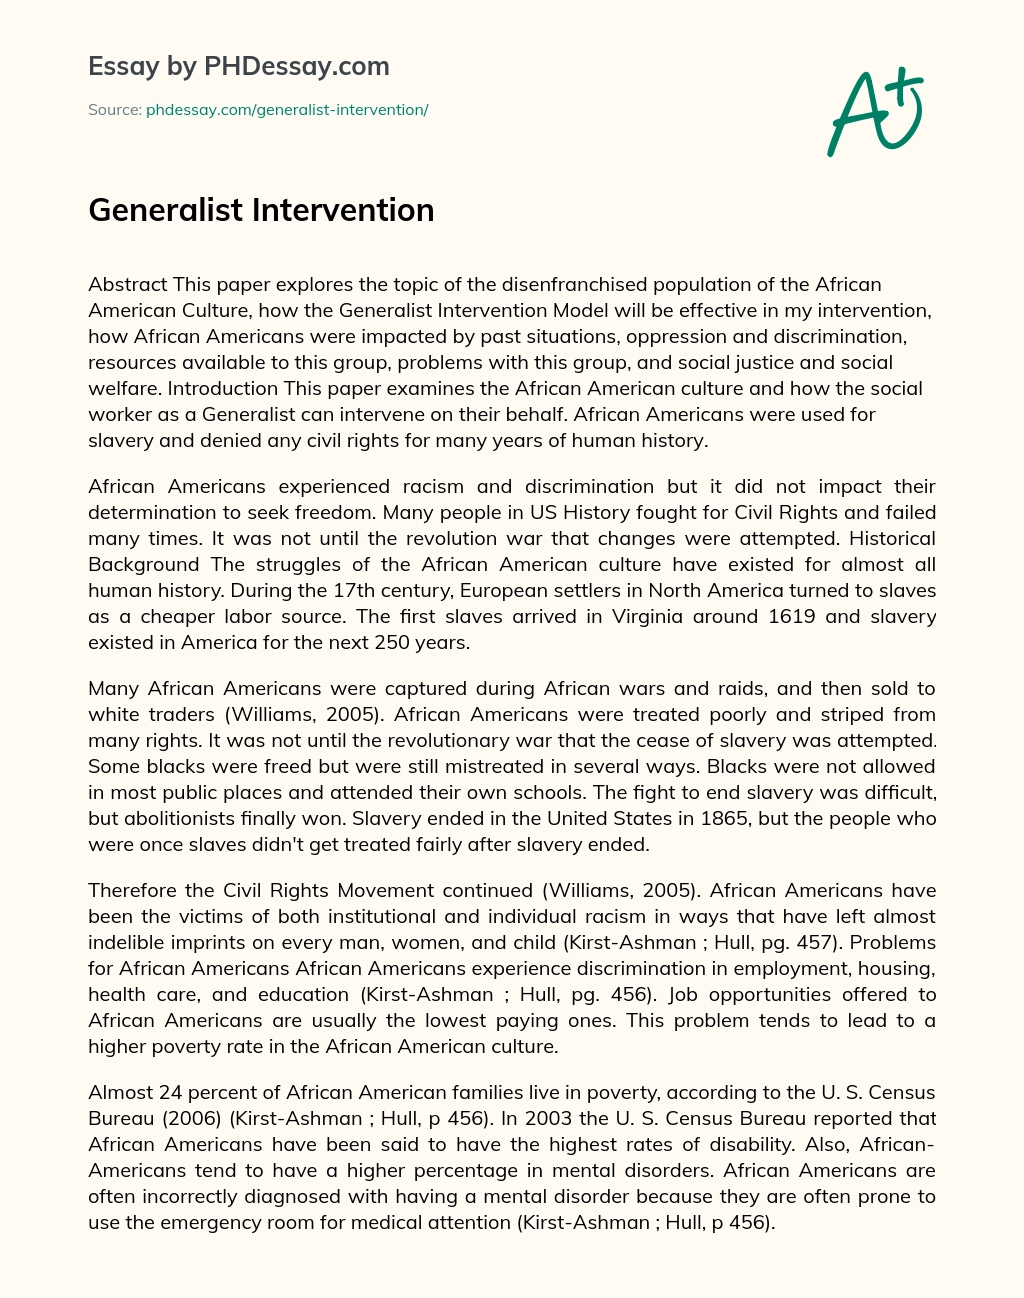 Generalist Intervention essay